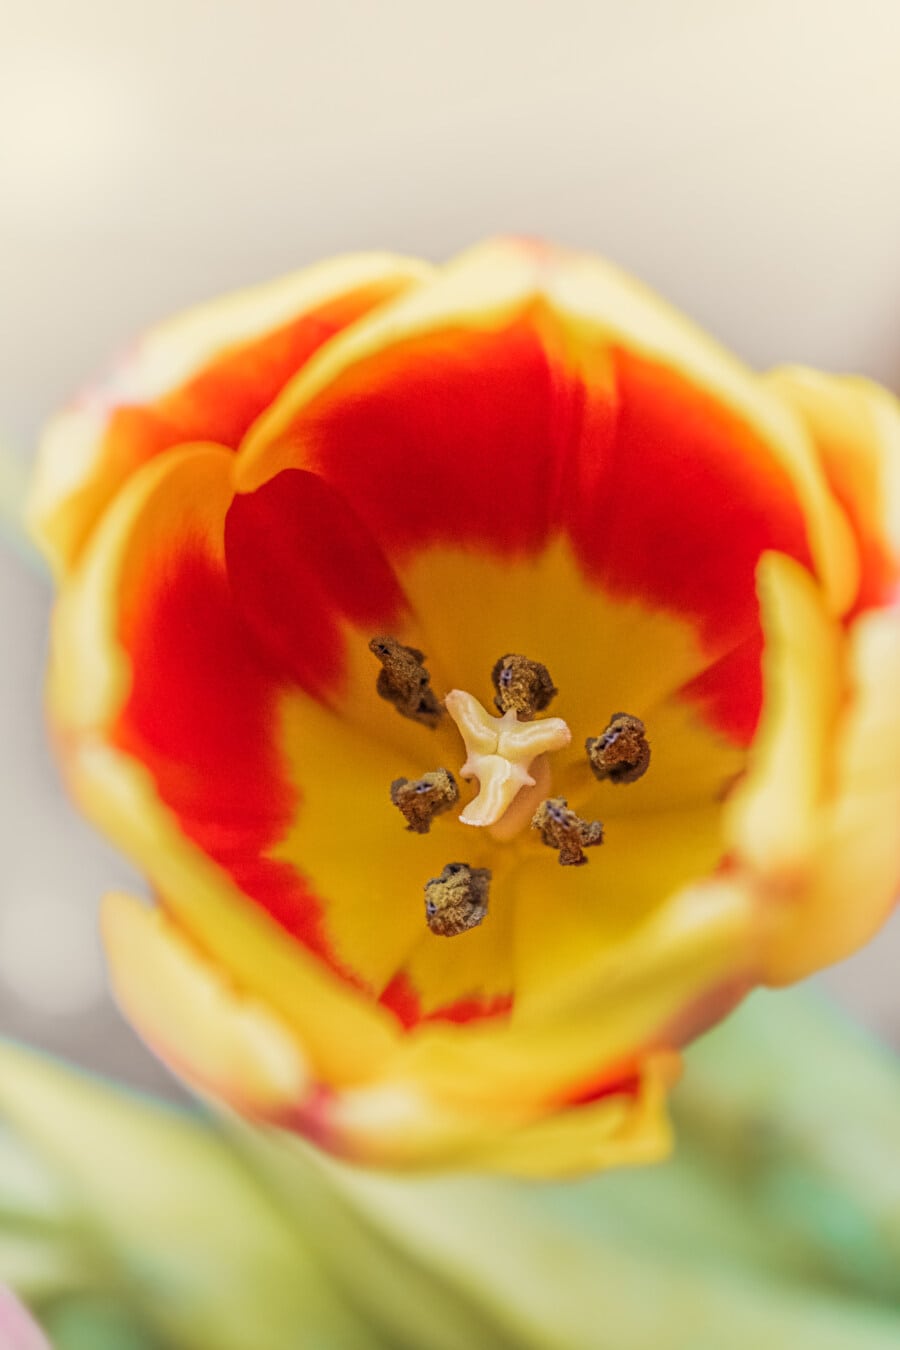 amarillo anaranjado, Tulip, contacto directo, macro, polen, pistilo, enfoque, Pétalo, flor, planta